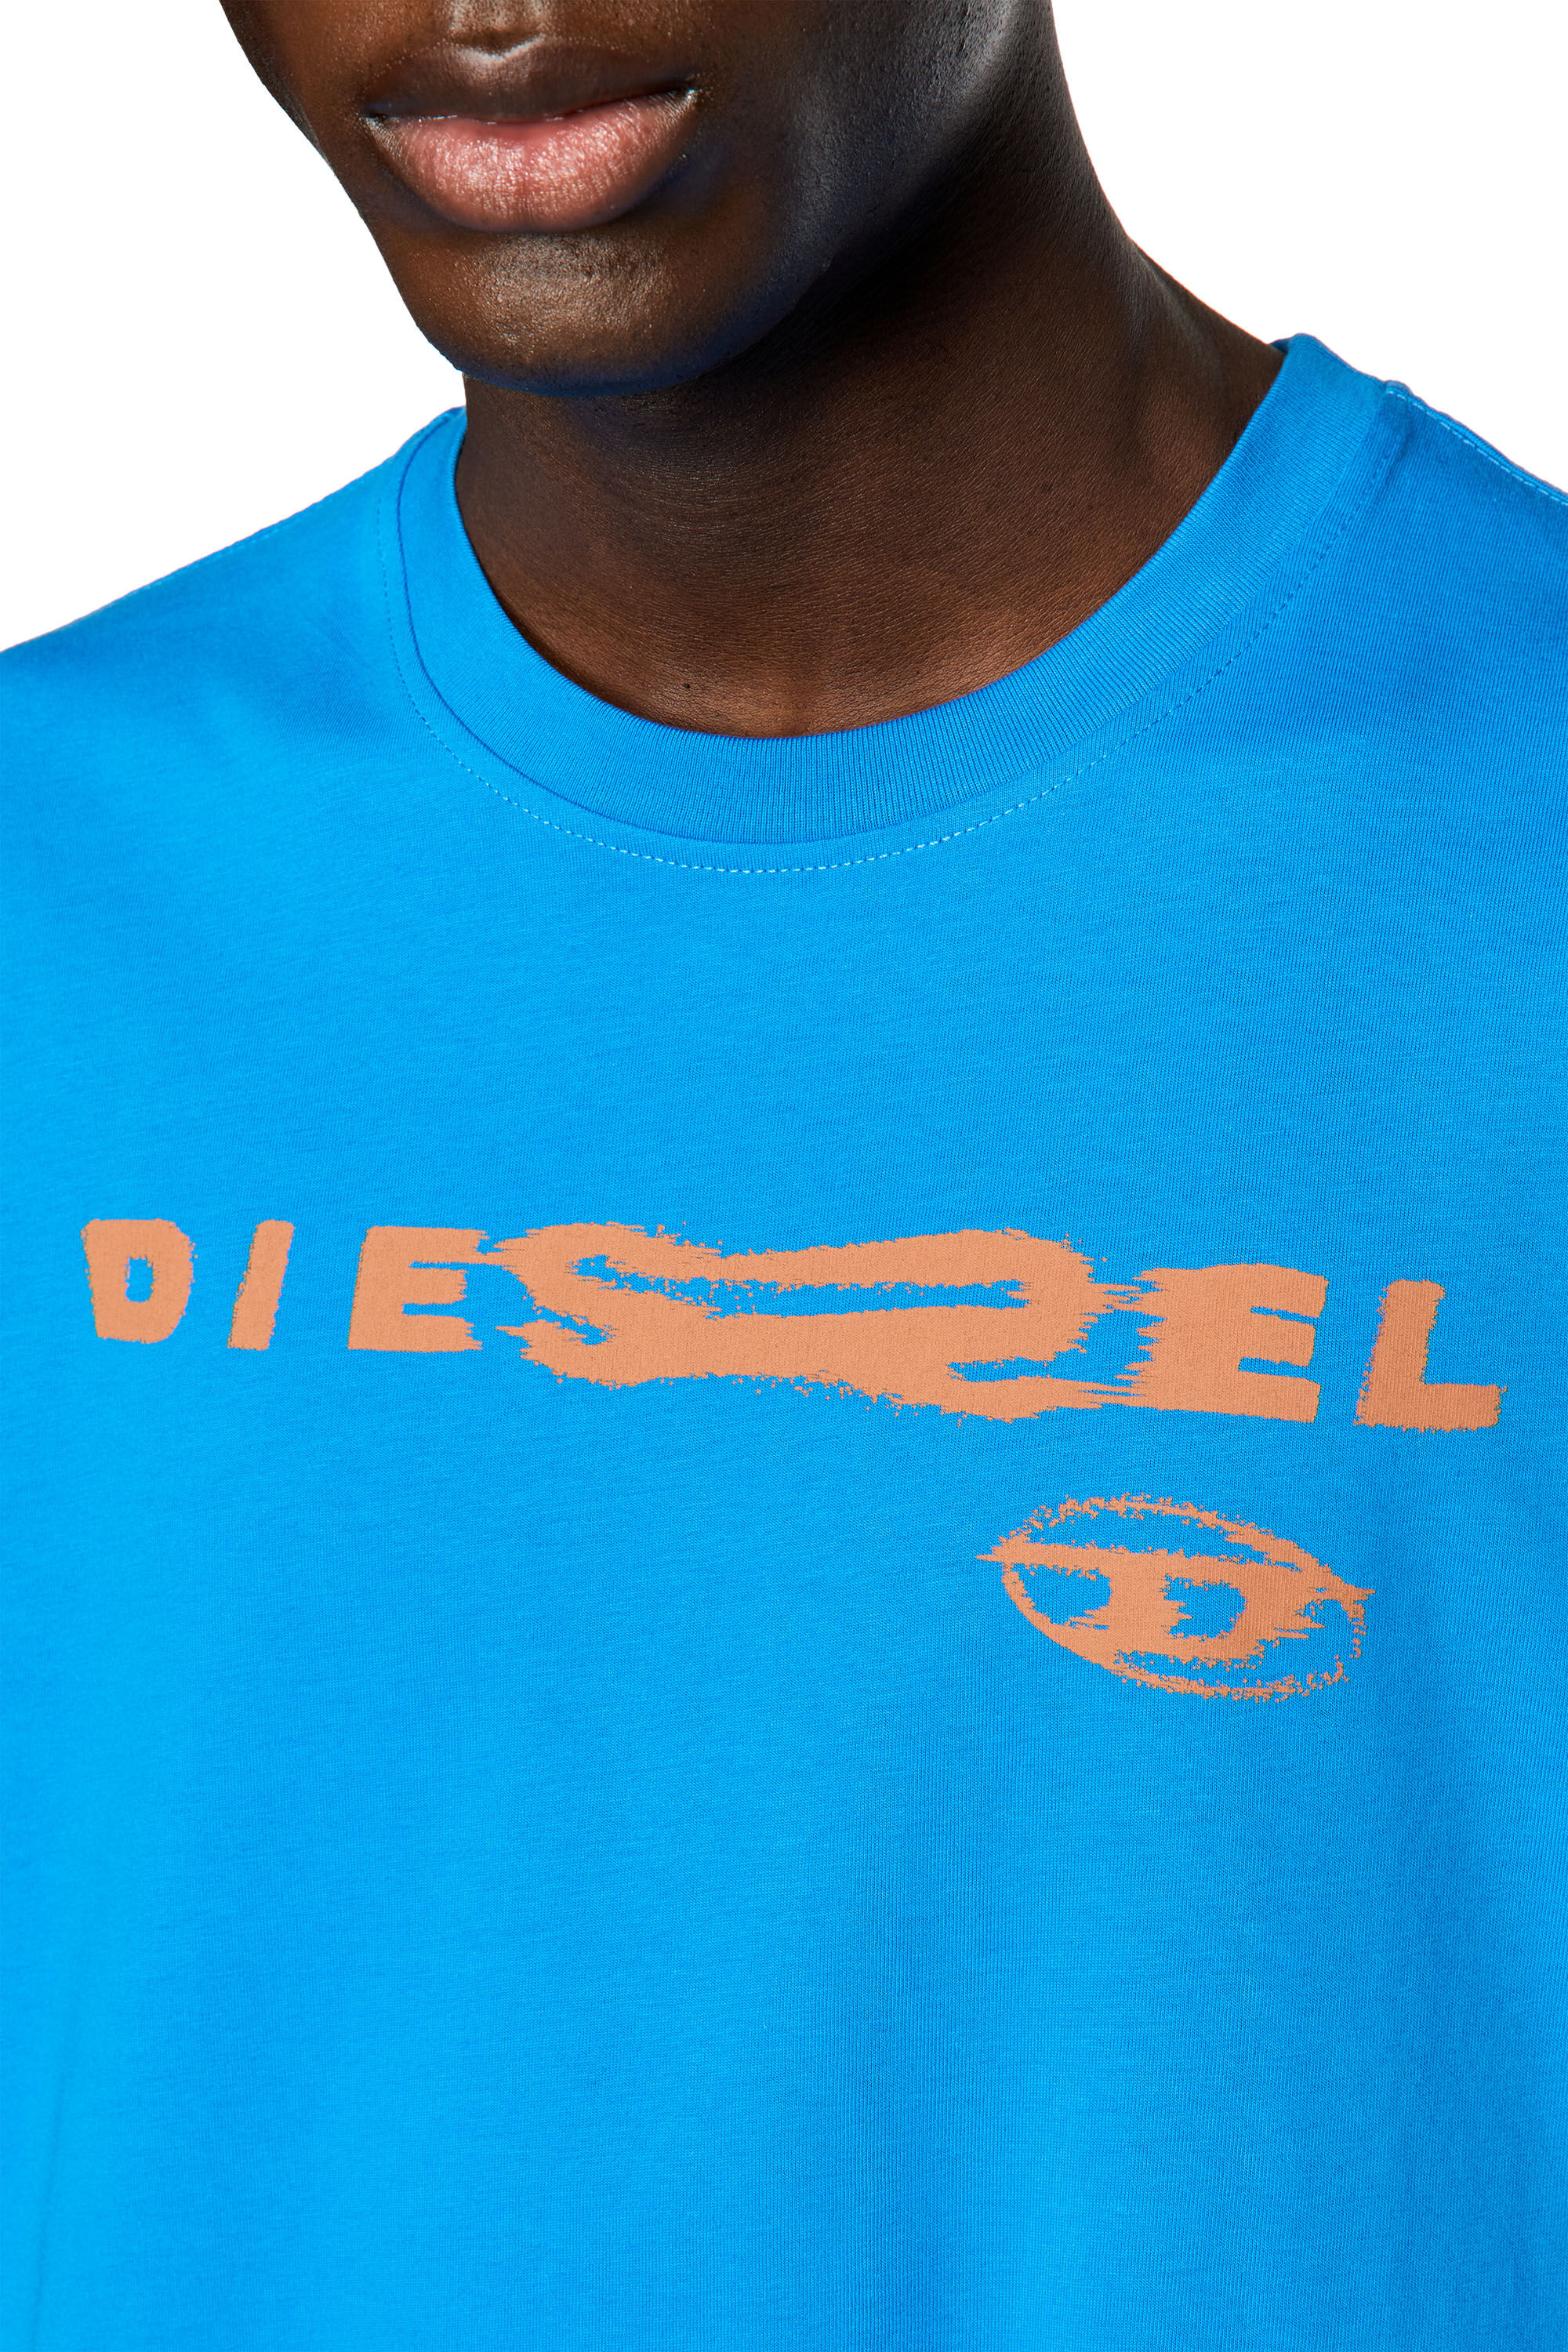 Diesel - T-JUST-G9, Blu - Image 5